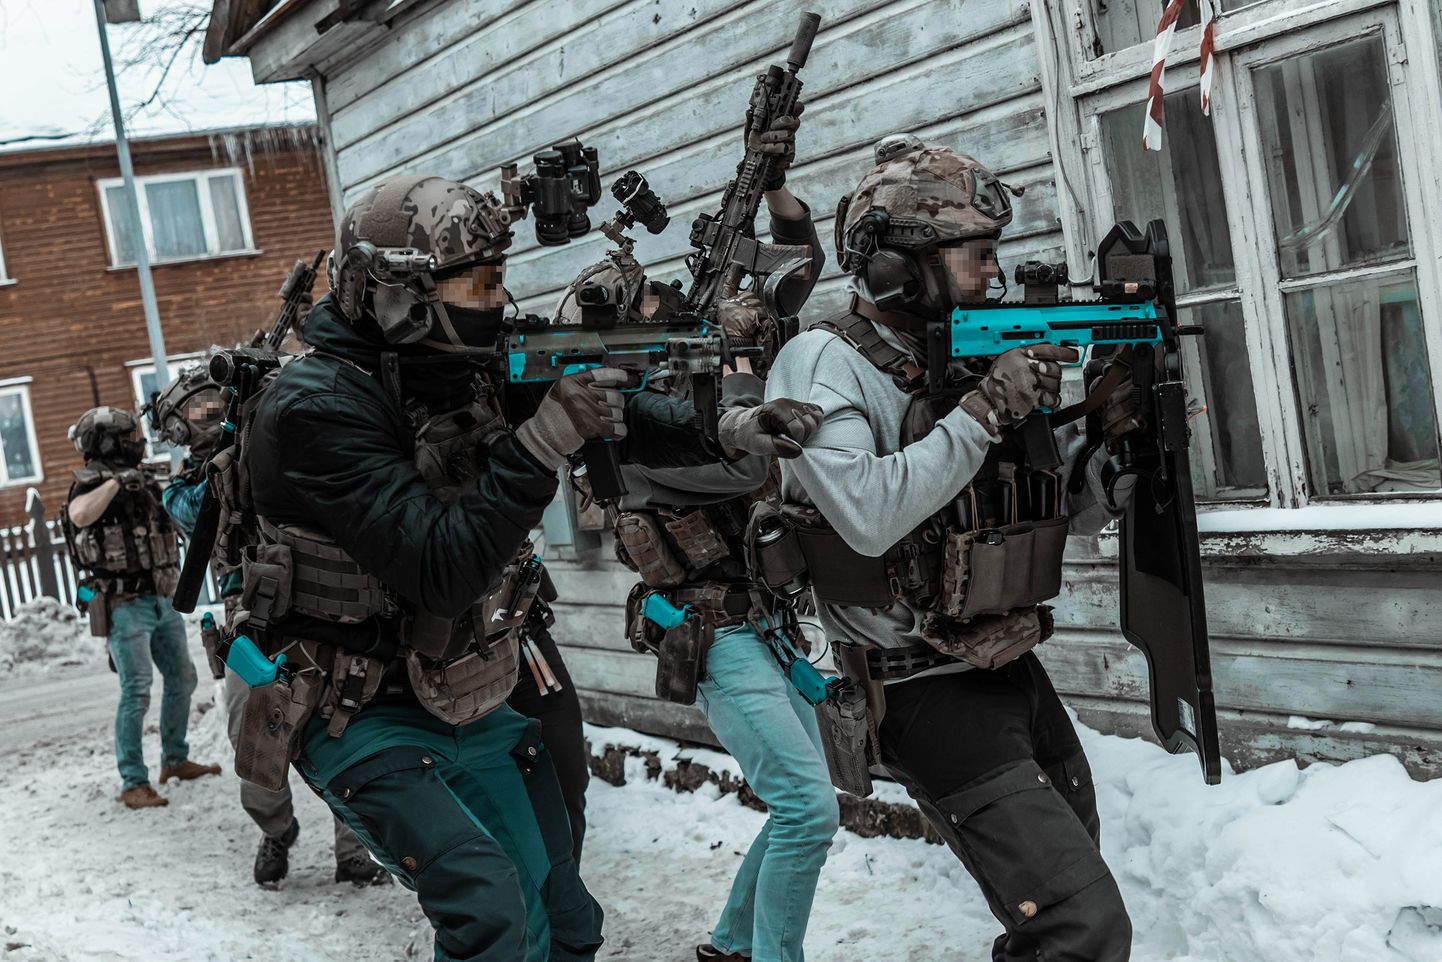 Möödunud aasta detsembris korraldas erioperatsioonide väejuhatus Saaremaal rahvusvahelise õppuse, mille eesmärk oli harjutada kriisiaja tegevusi ning mängida läbi realistlikke stsenaariume koostöös K-komando, Kaitsepolitseiameti ja välispartneritega.